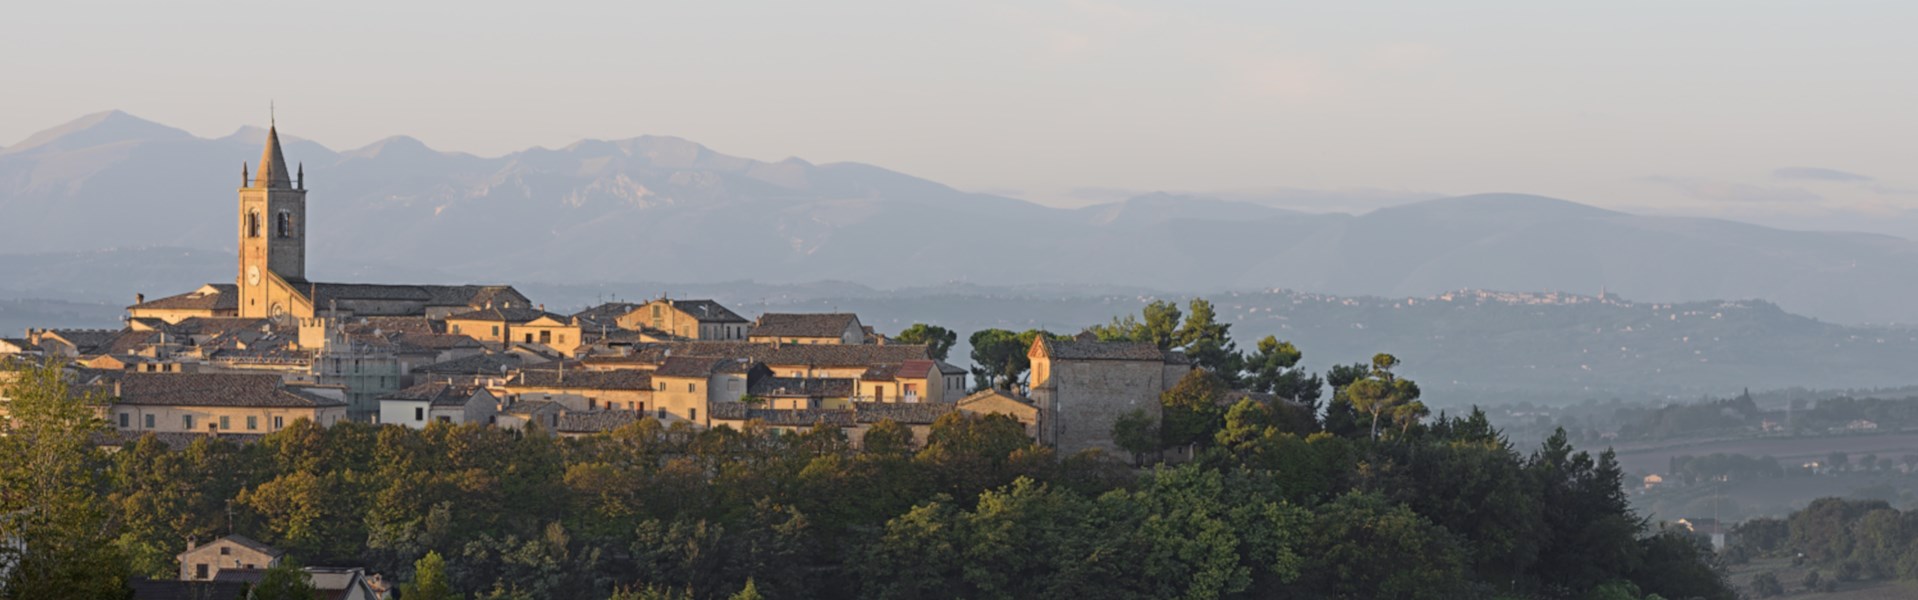 Montecassiano - Panorama